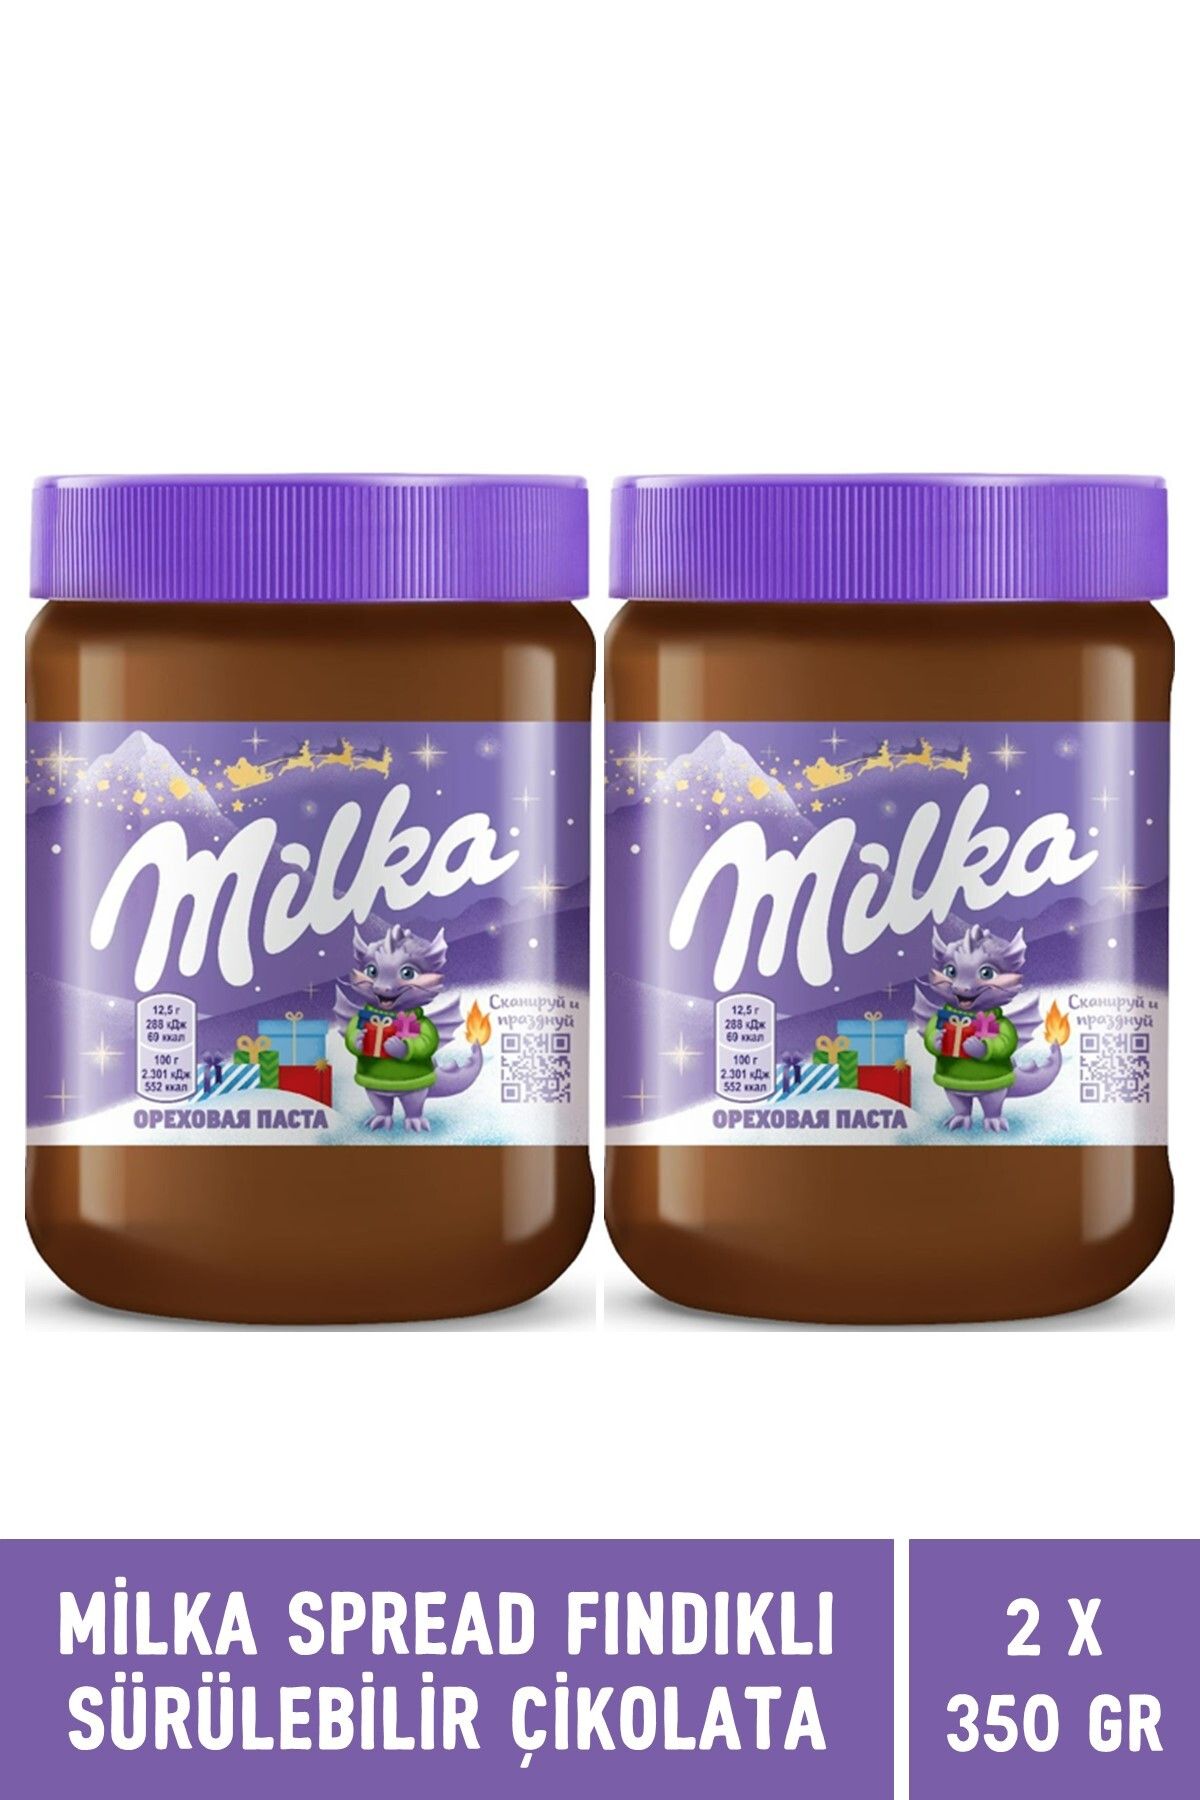 Milka Spread Hazelnut Sürülebilir Çikolata Kakaolu Fındık Ezmesi 350 gr - 2 Adet